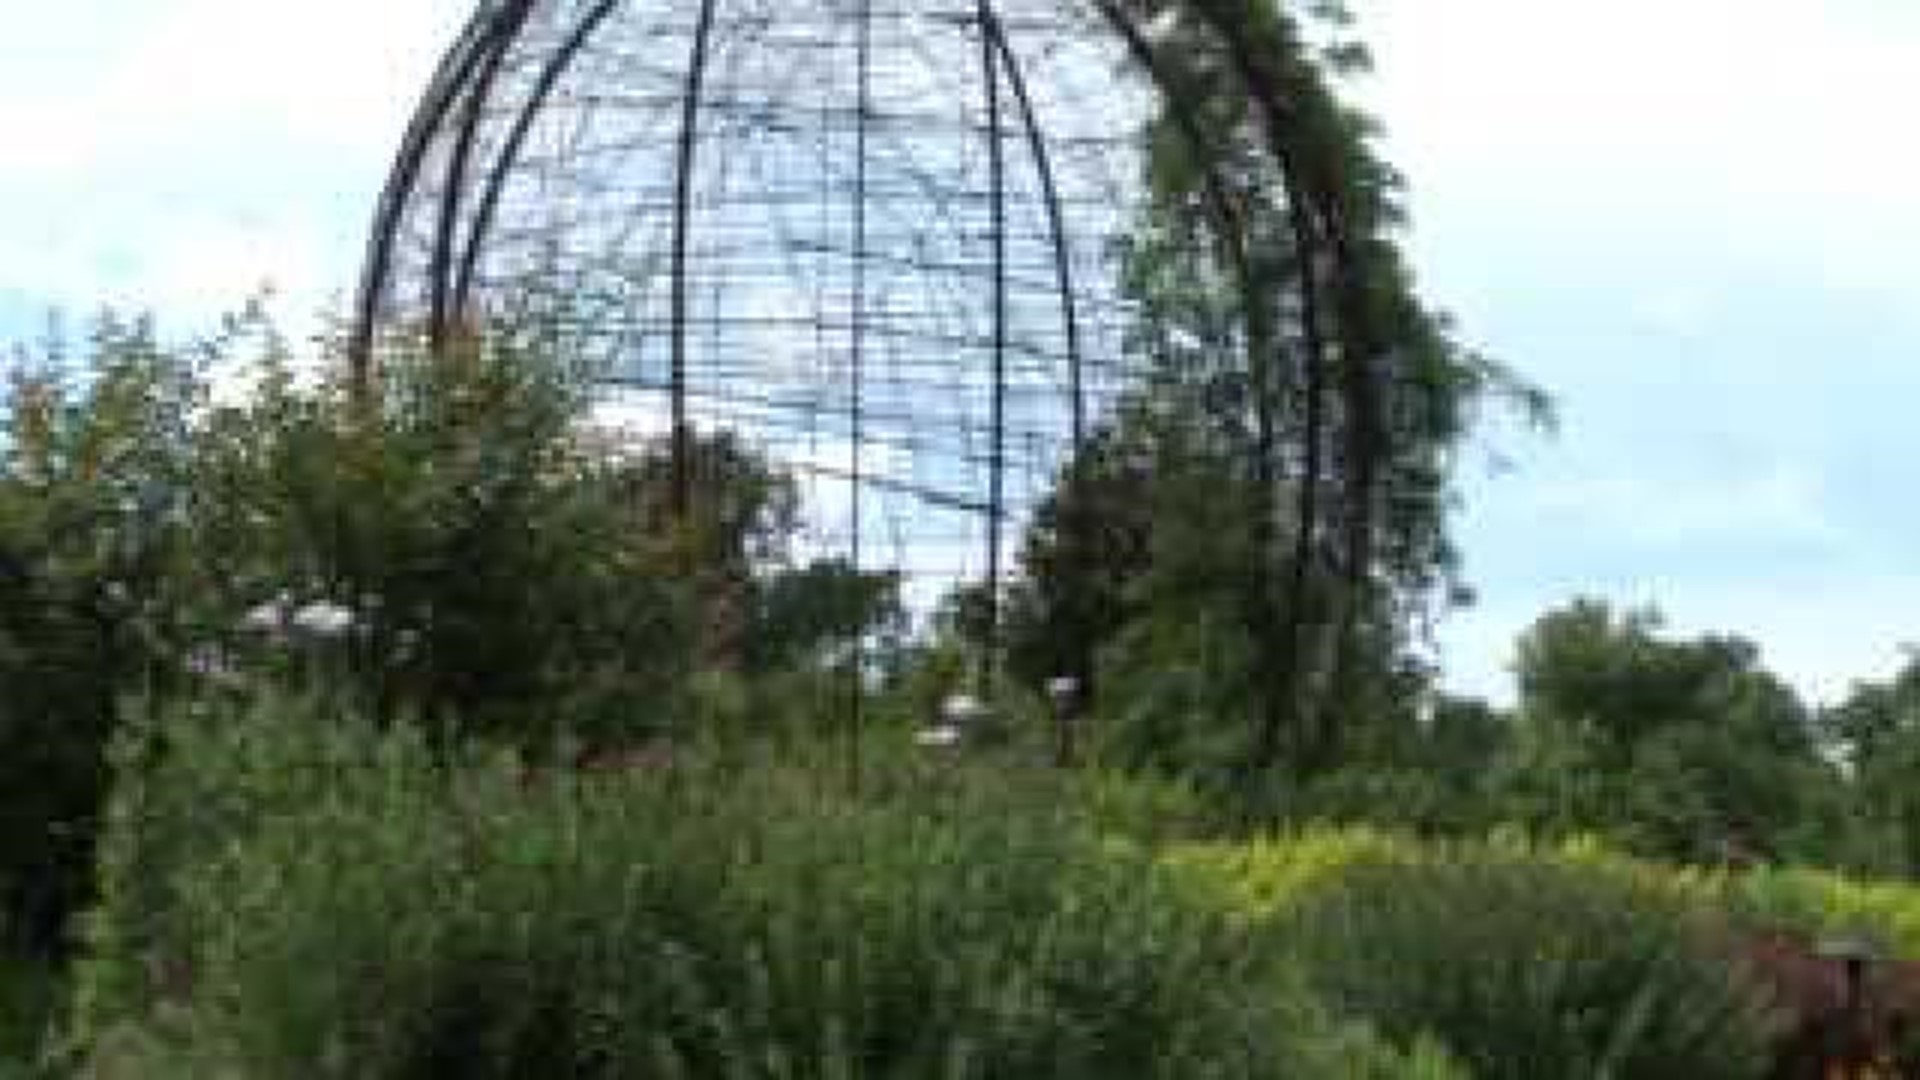 Sharum's Garden Center: Botanical Gardens